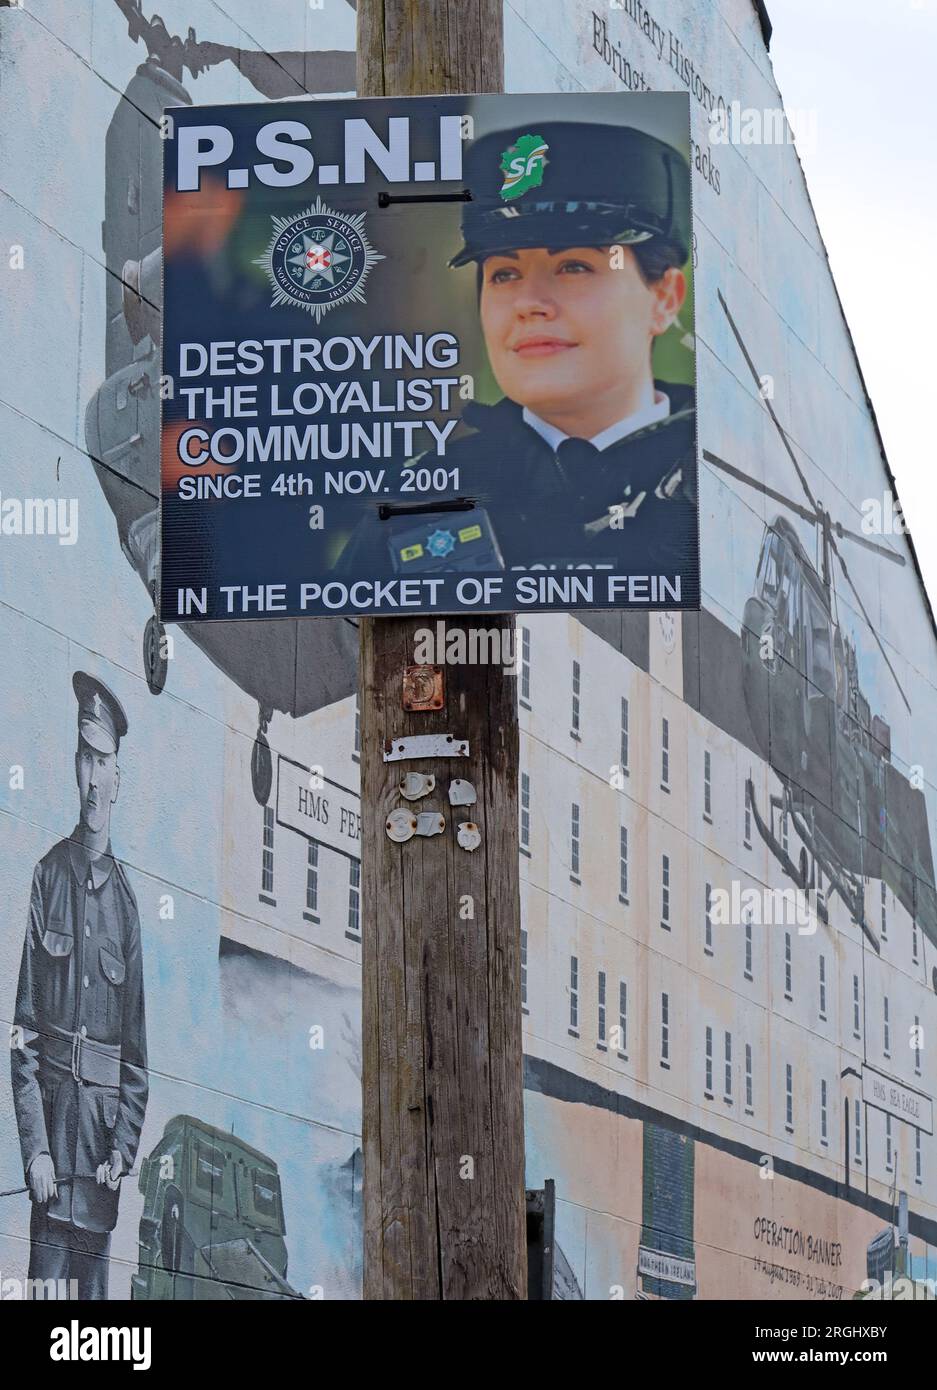 PSNI dans la poche du Sinn Fein, détruisant la communauté loyaliste, signe à Pine St, Ebrington district de Londonderry, Irlande du Nord, UK, ,BT47 6EJ Banque D'Images